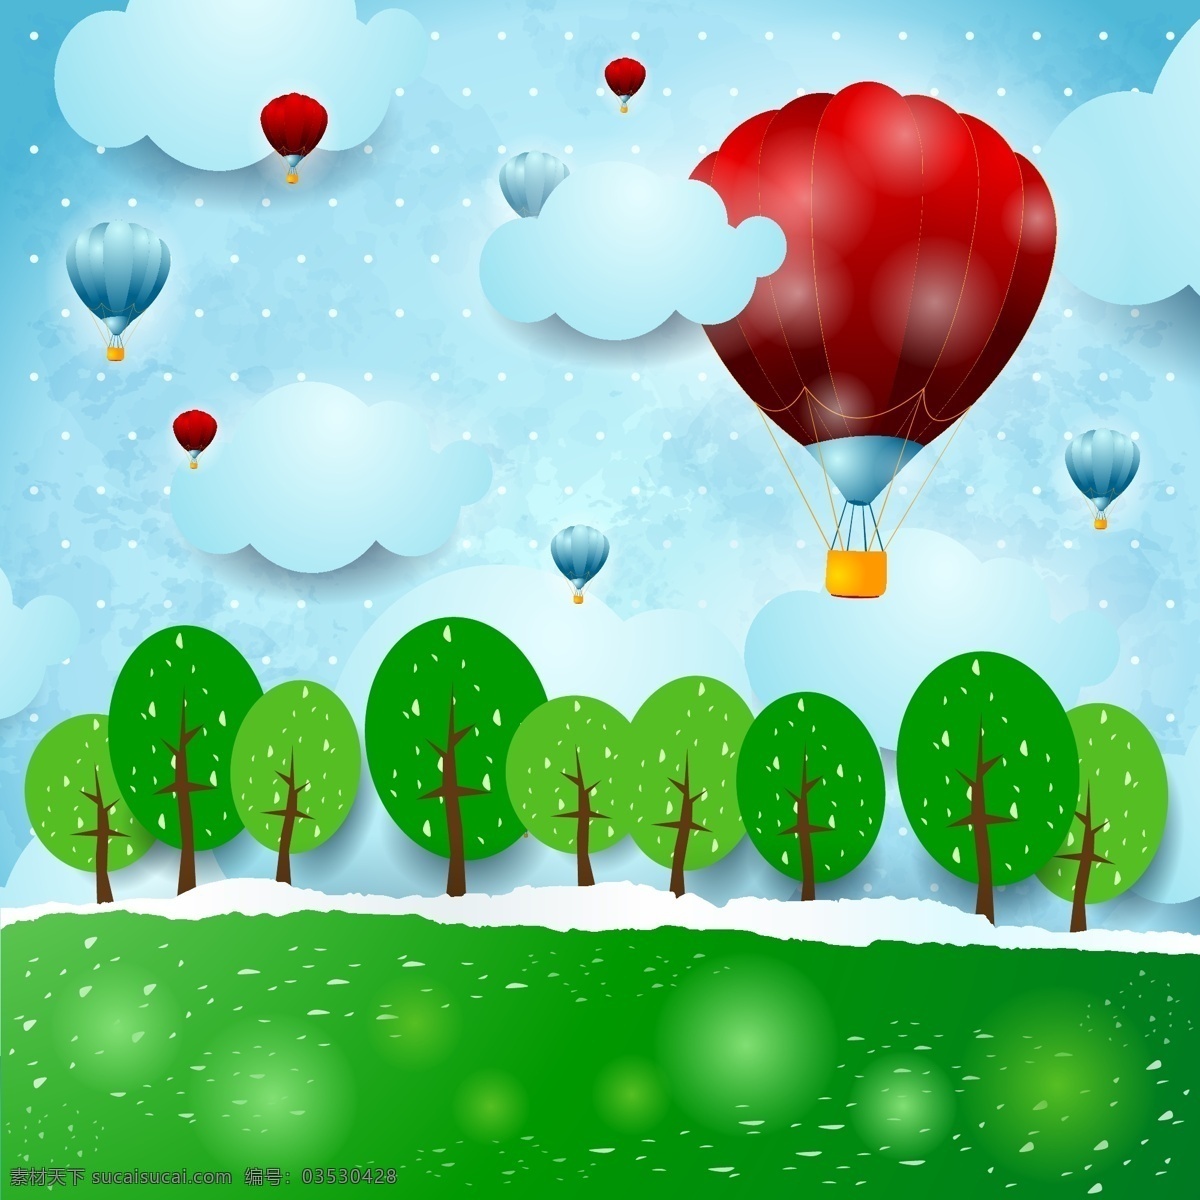 缤纷 热气球 标 贴图 卡通 蓝天 树木 树叶 雪花 矢量图 其他矢量图